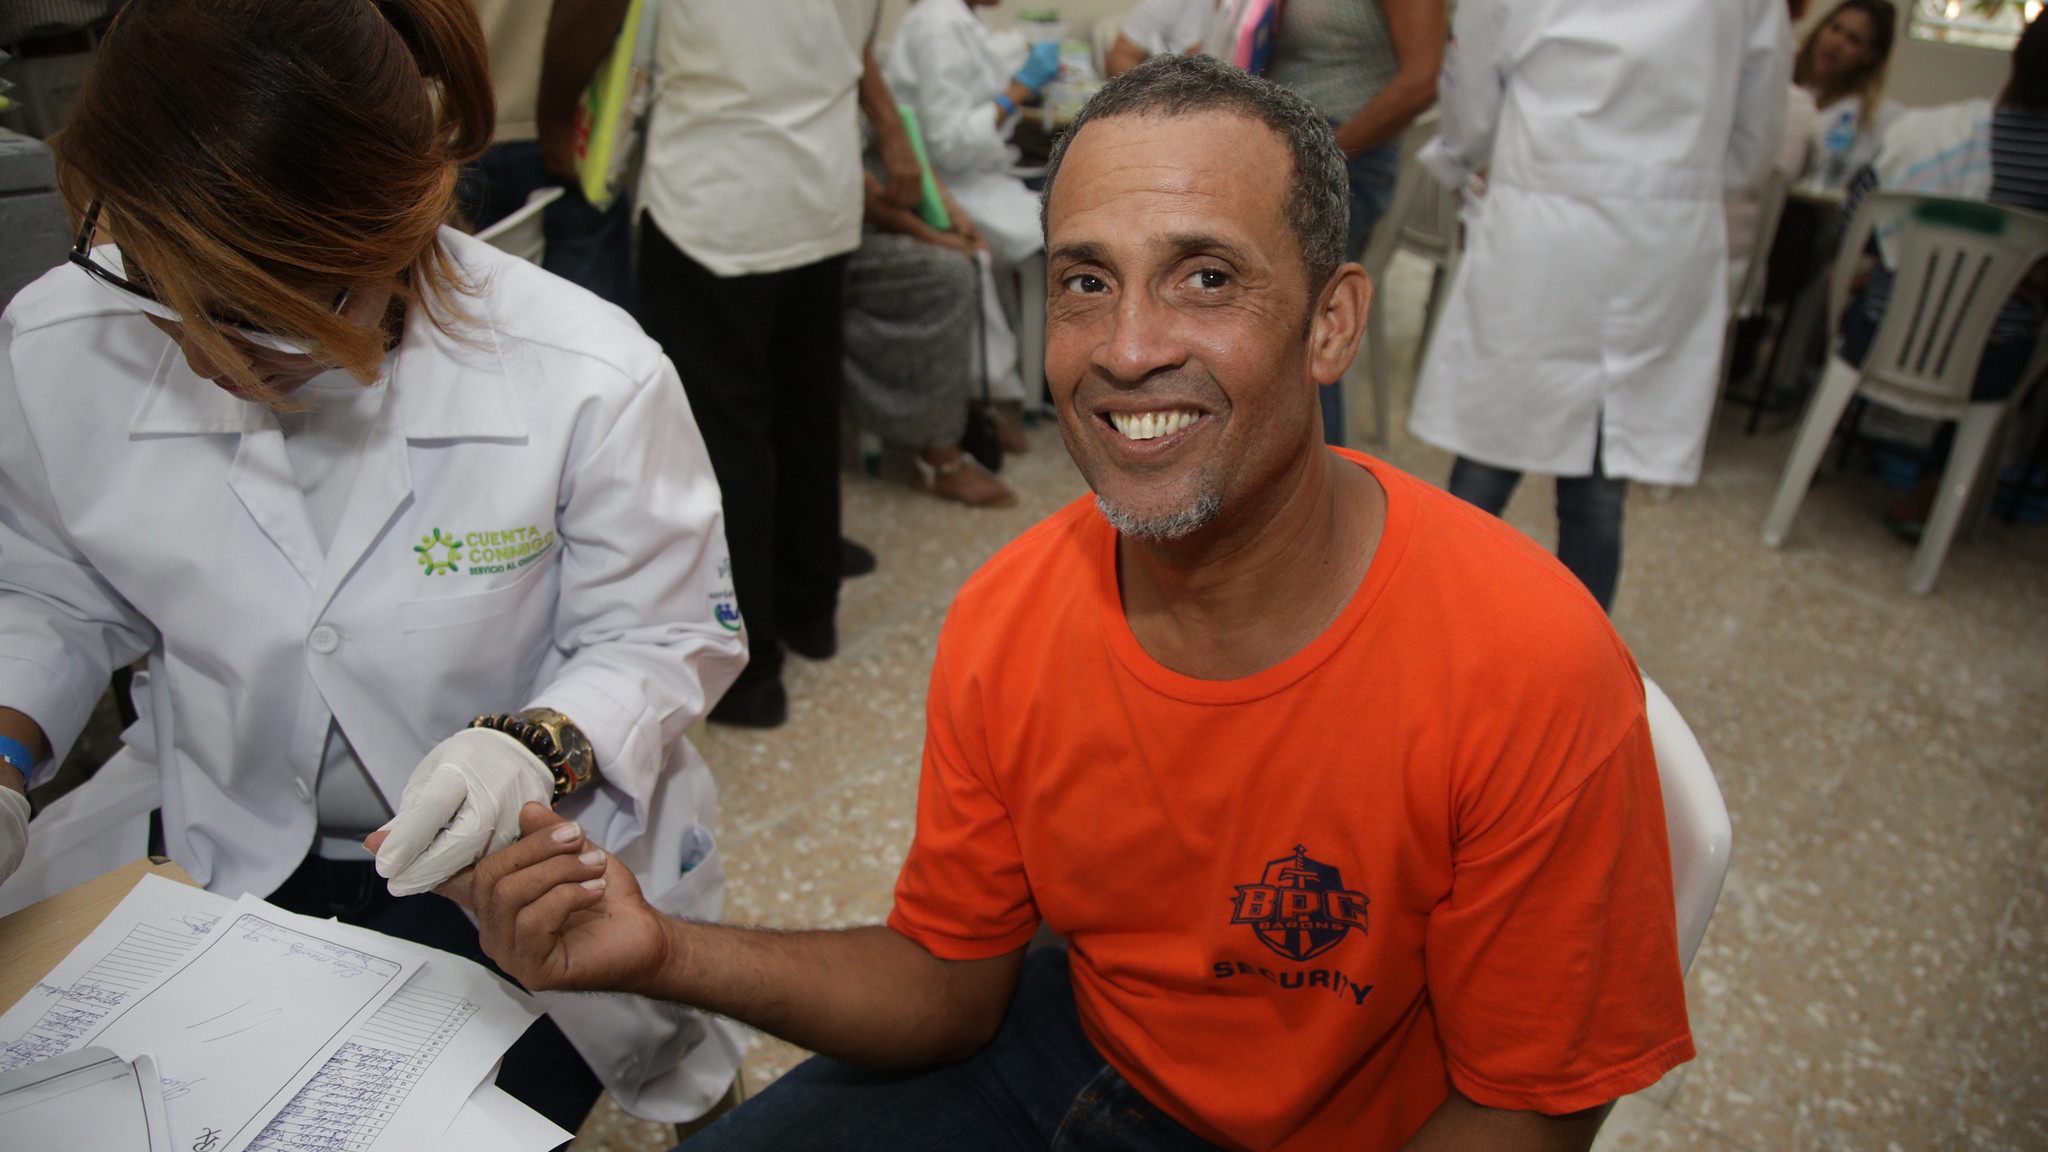 REPÚBLICA DOMINICANA: Más de 10,440 personas de Duvergé, Jimaní, La Descubierta, Villa Jaragua y Los Ríos reciben servicios de salud en jornada médica